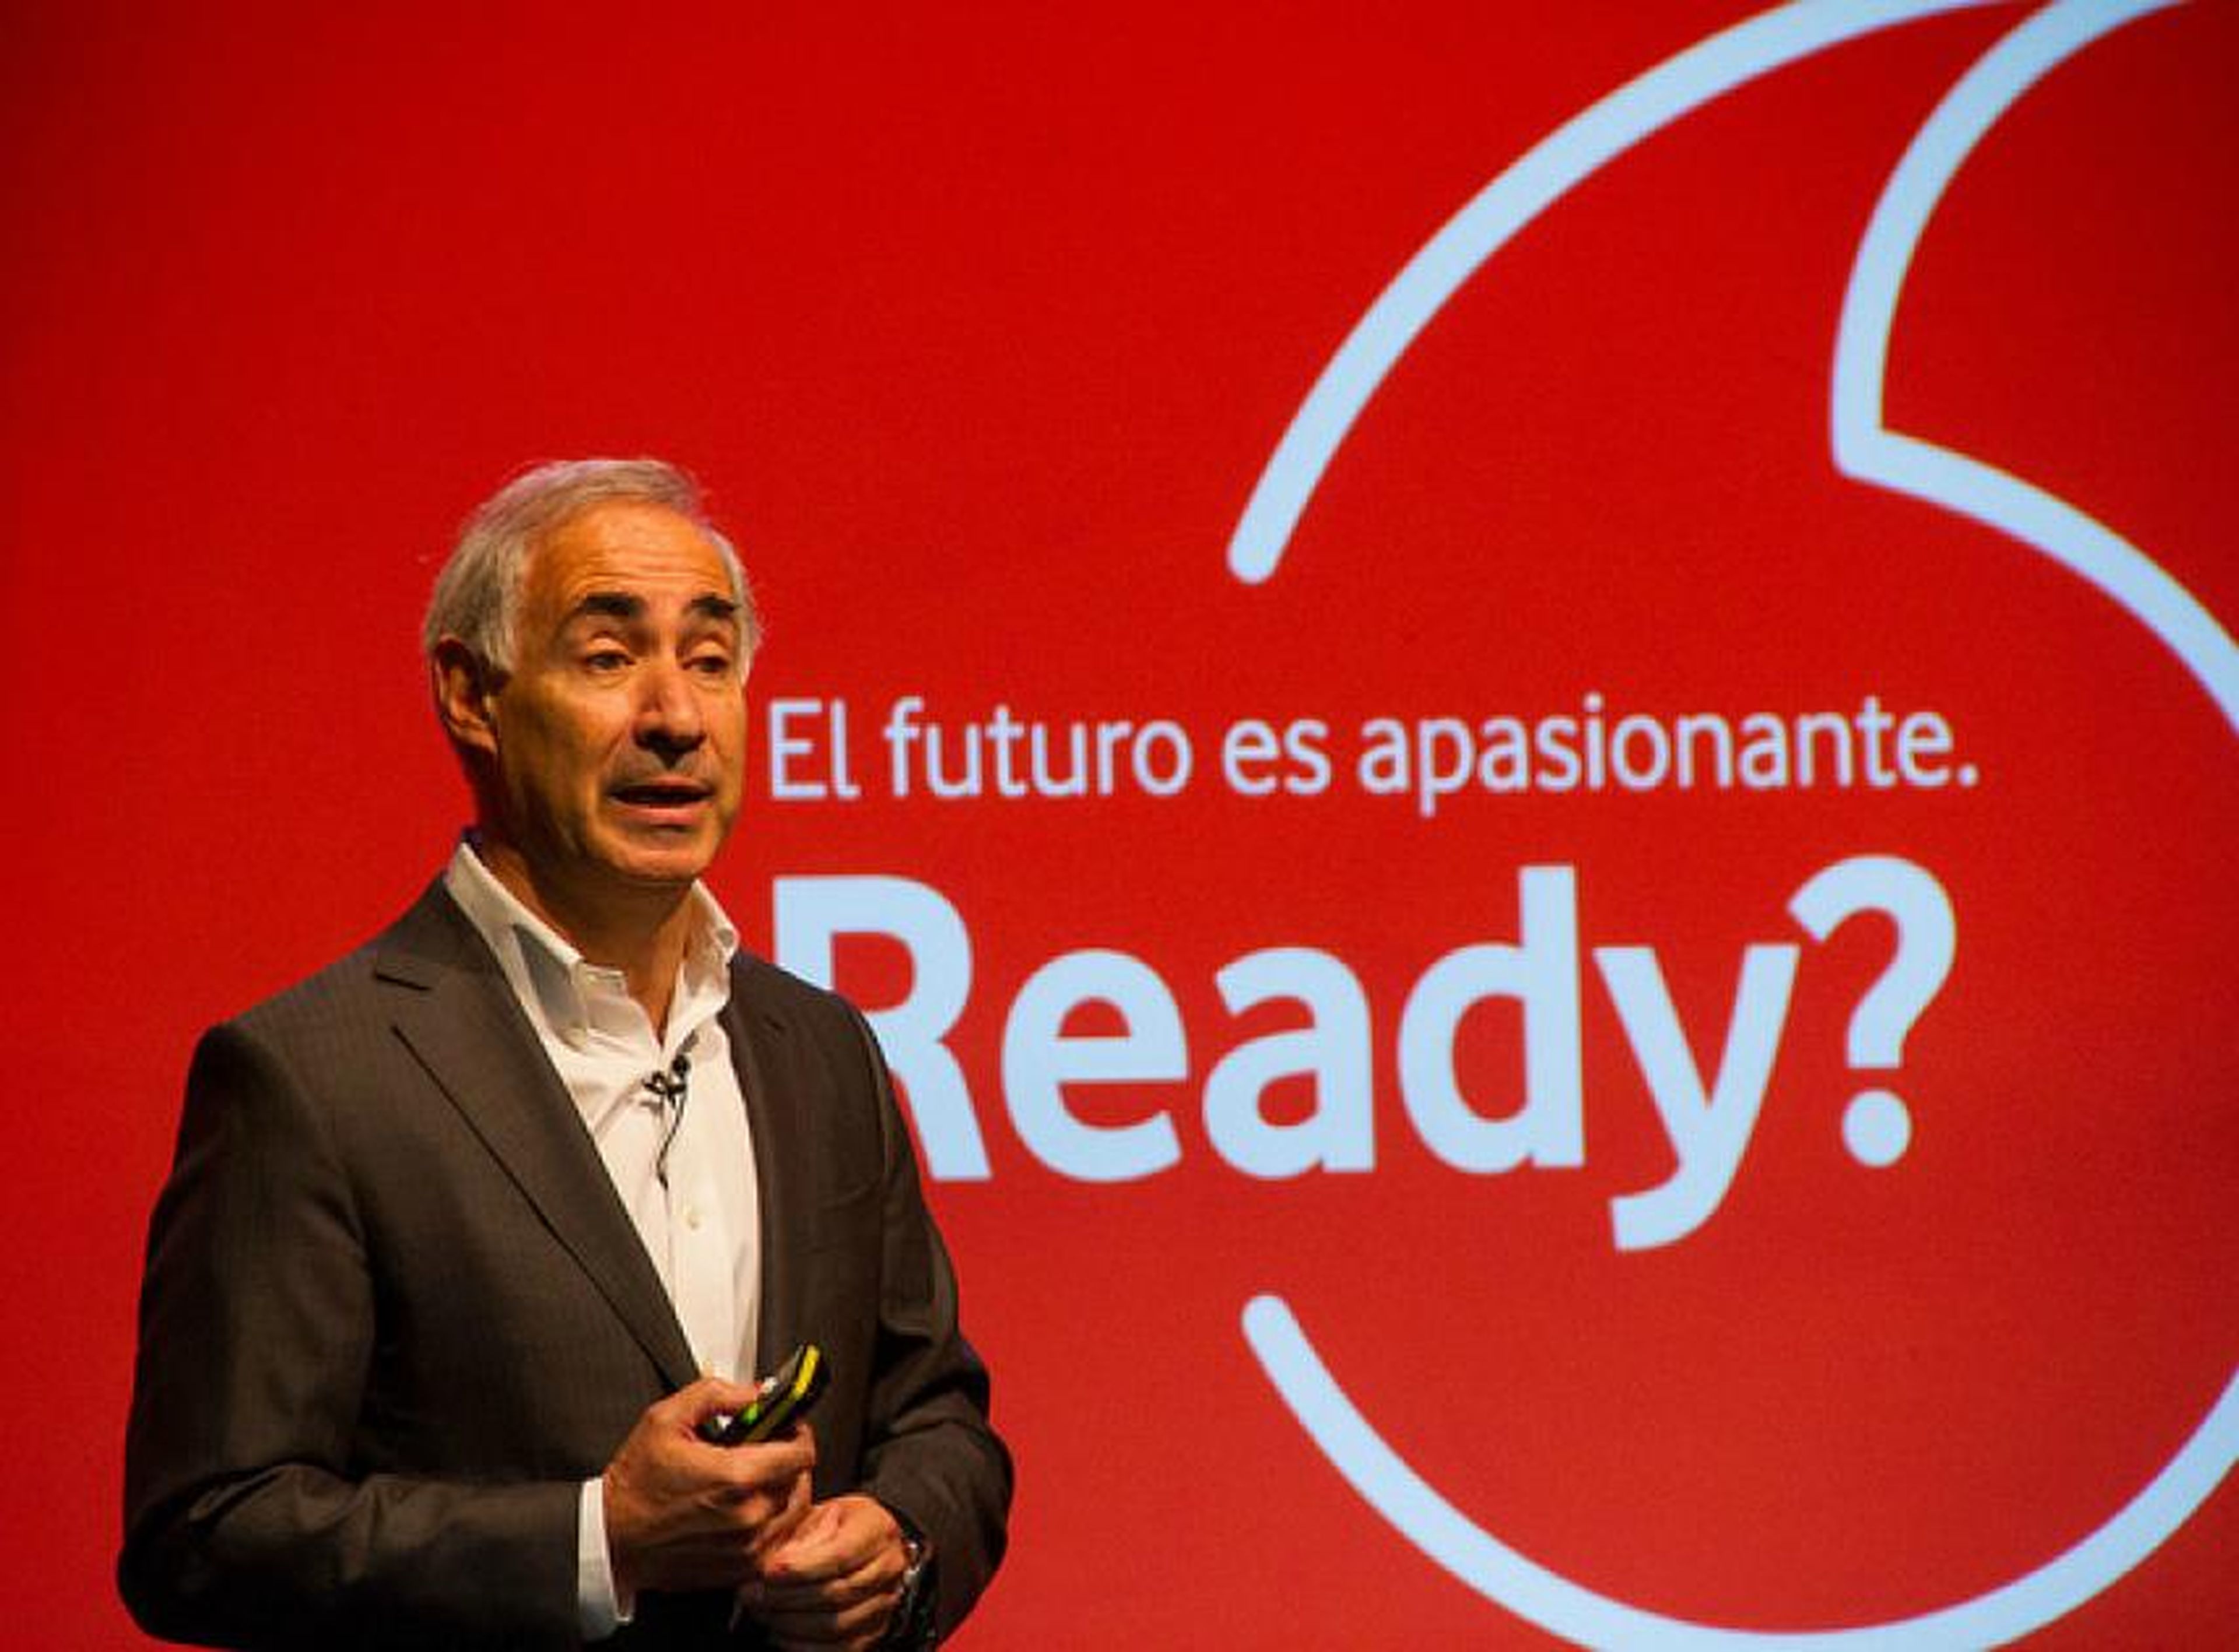 Antonio Coimbra, CEO de Vodafone